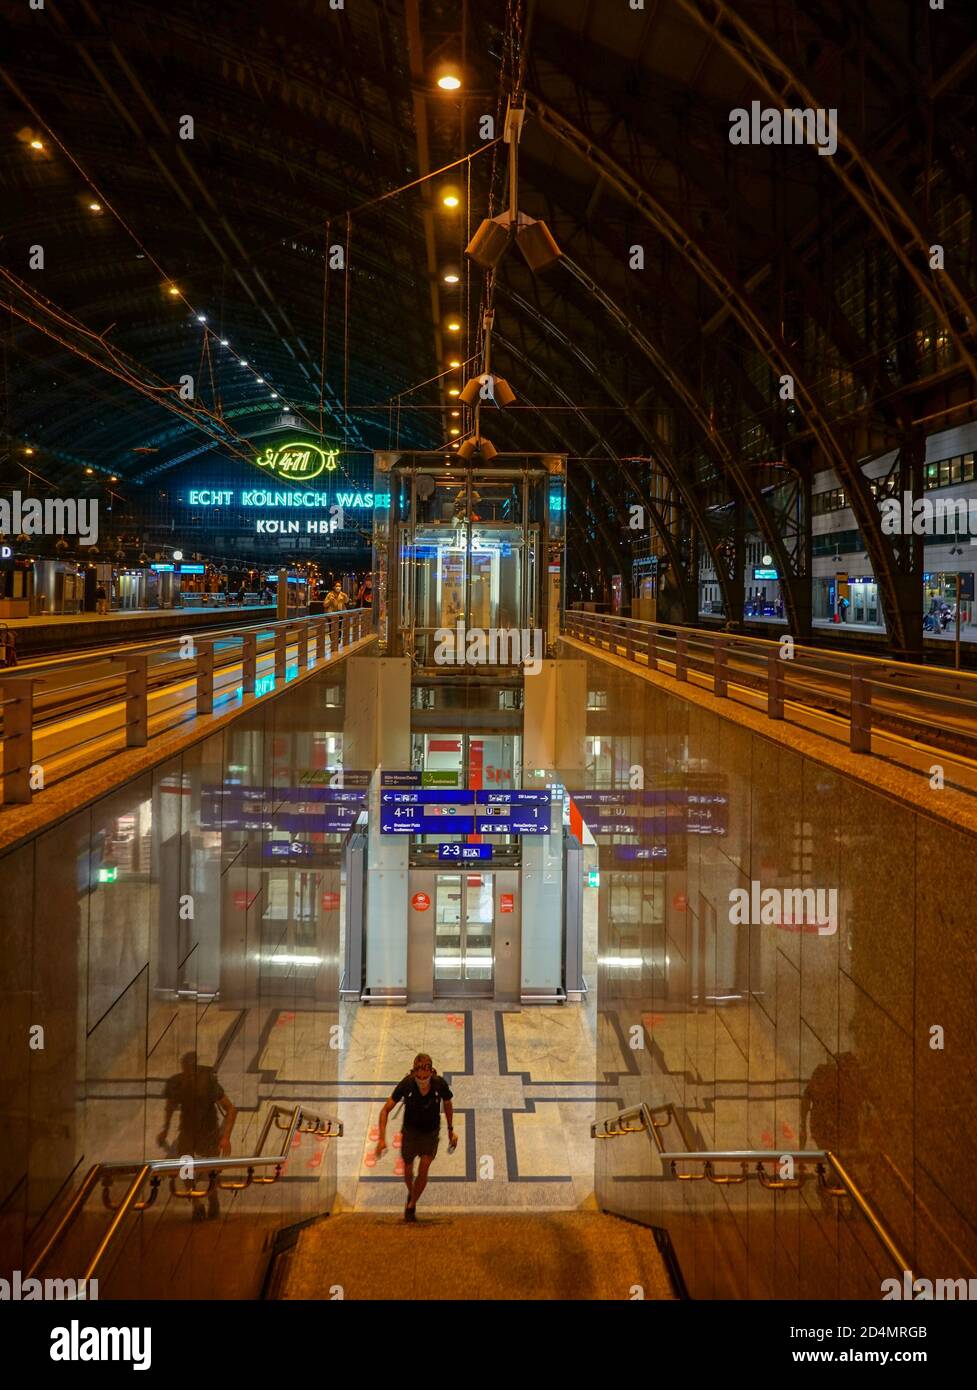 KÖLN, DEUTSCHLAND - 13. Sep 2020: Hauptbahnhof in köln mit einer Treppe im Vordergrund und überspannender Metalldachkonstruktion darüber Stockfoto